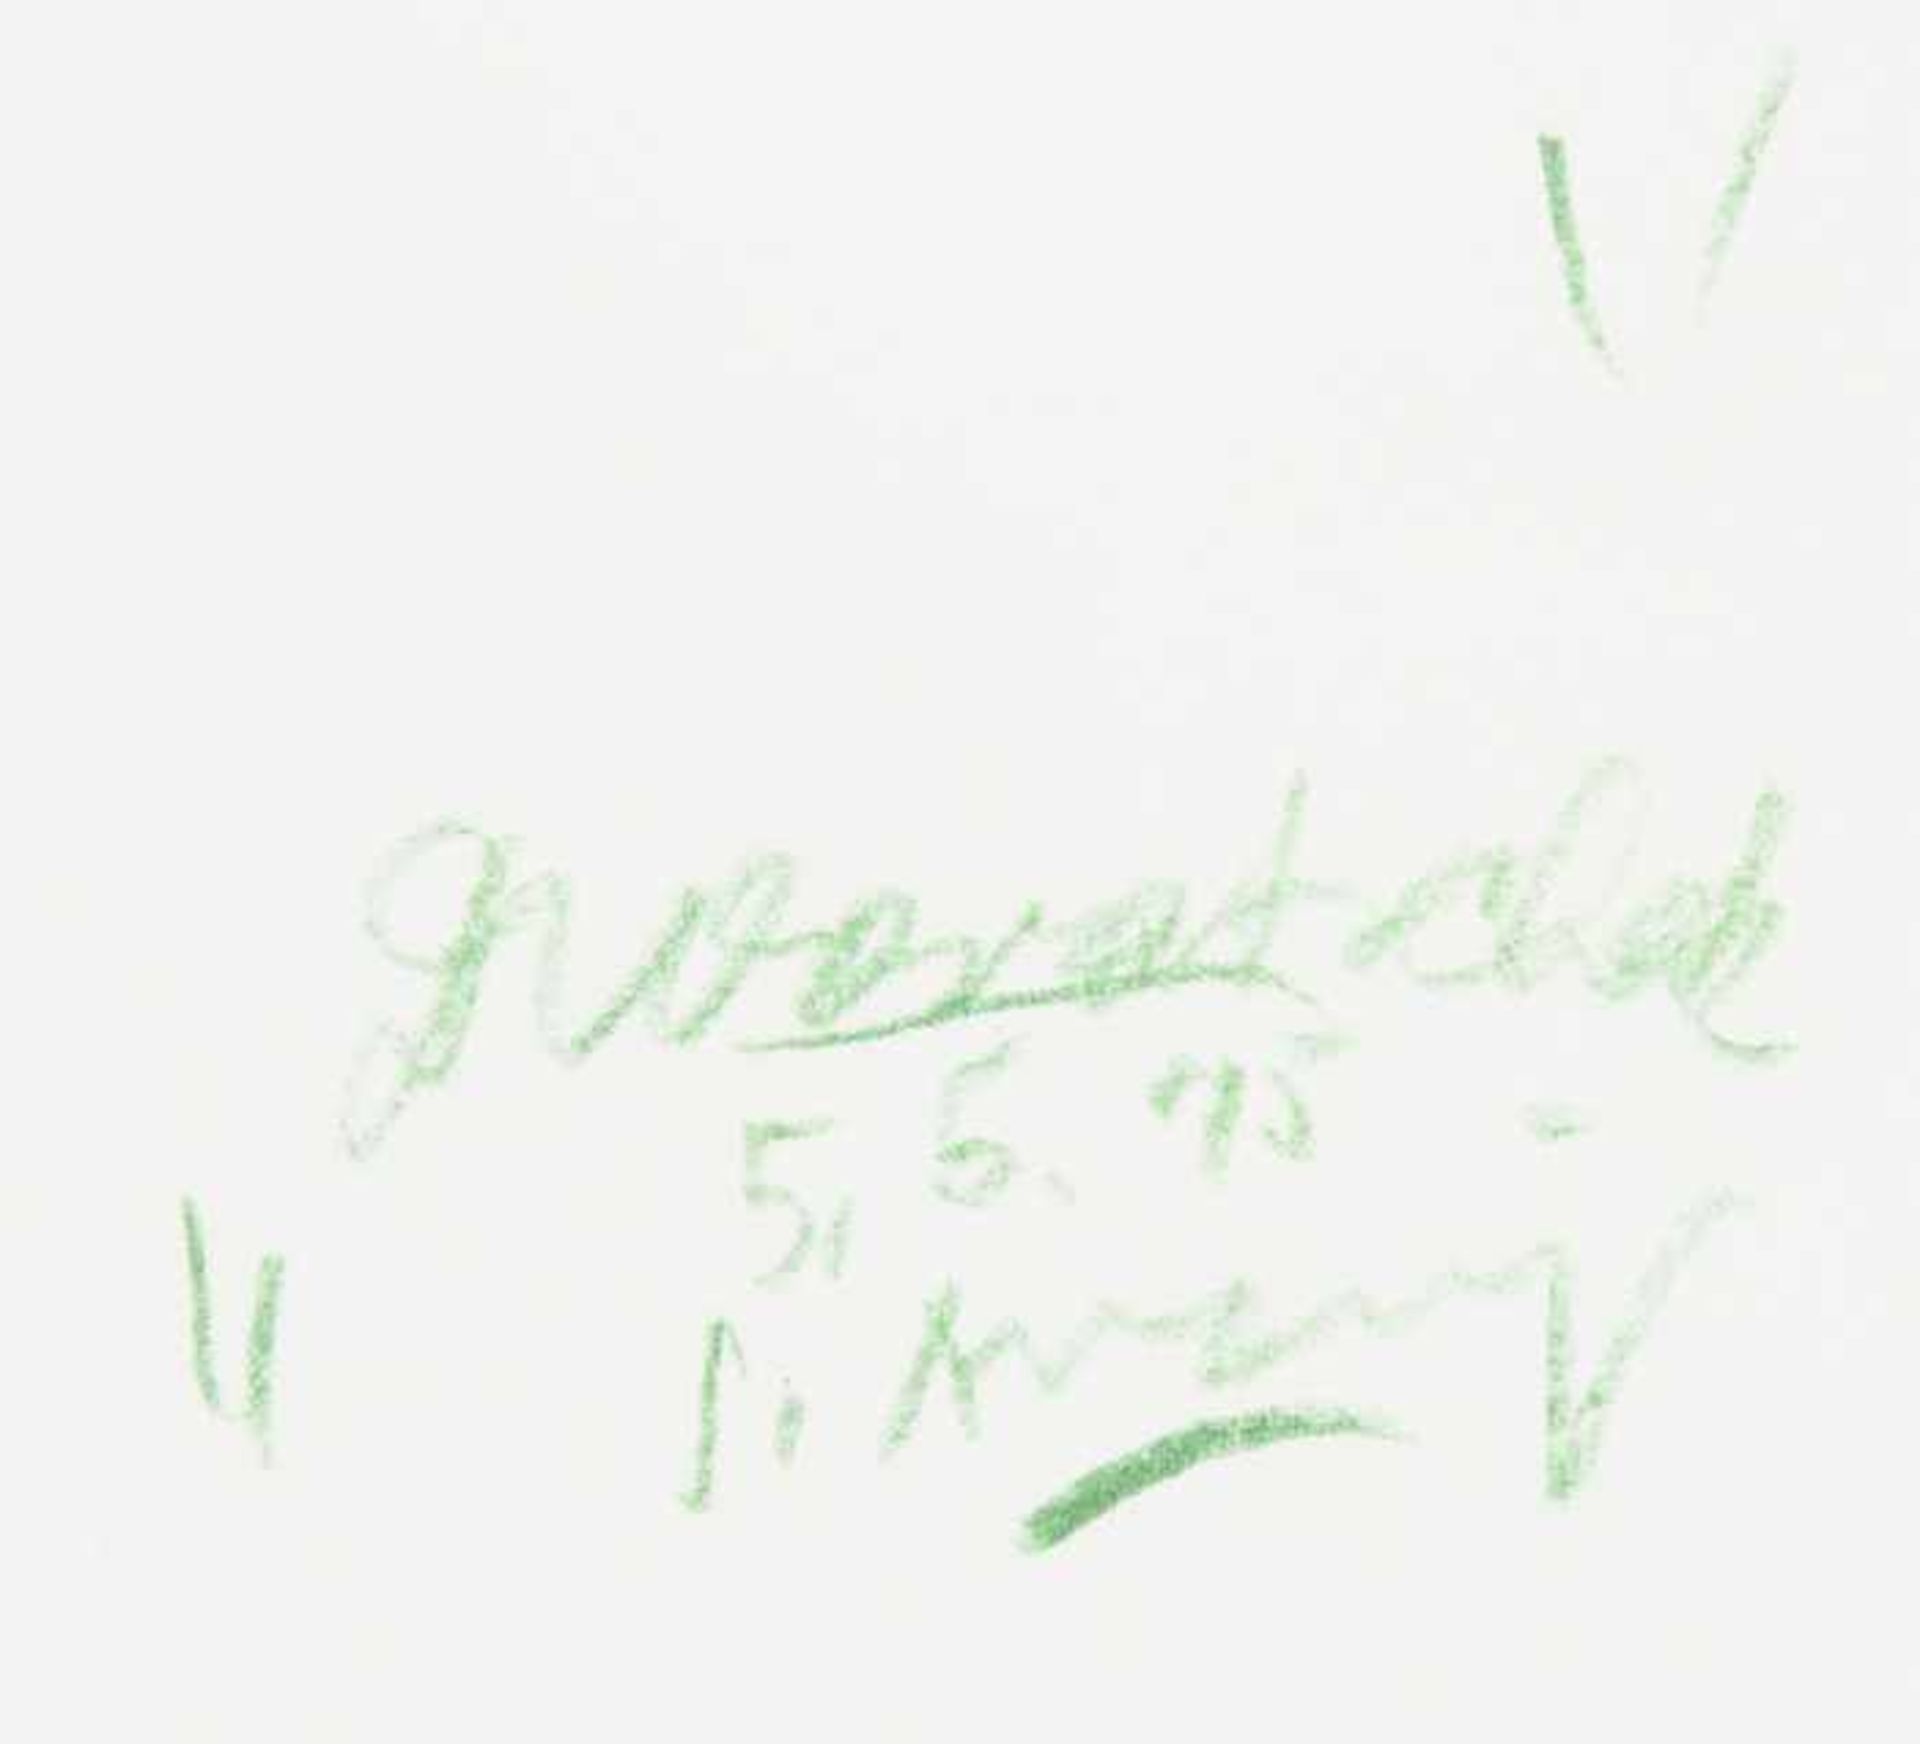 Anzinger, Siegfried Mooratschek, 5.5.1975 Farbkreide auf Papier Signiert, datiert und betitelt - Bild 3 aus 3